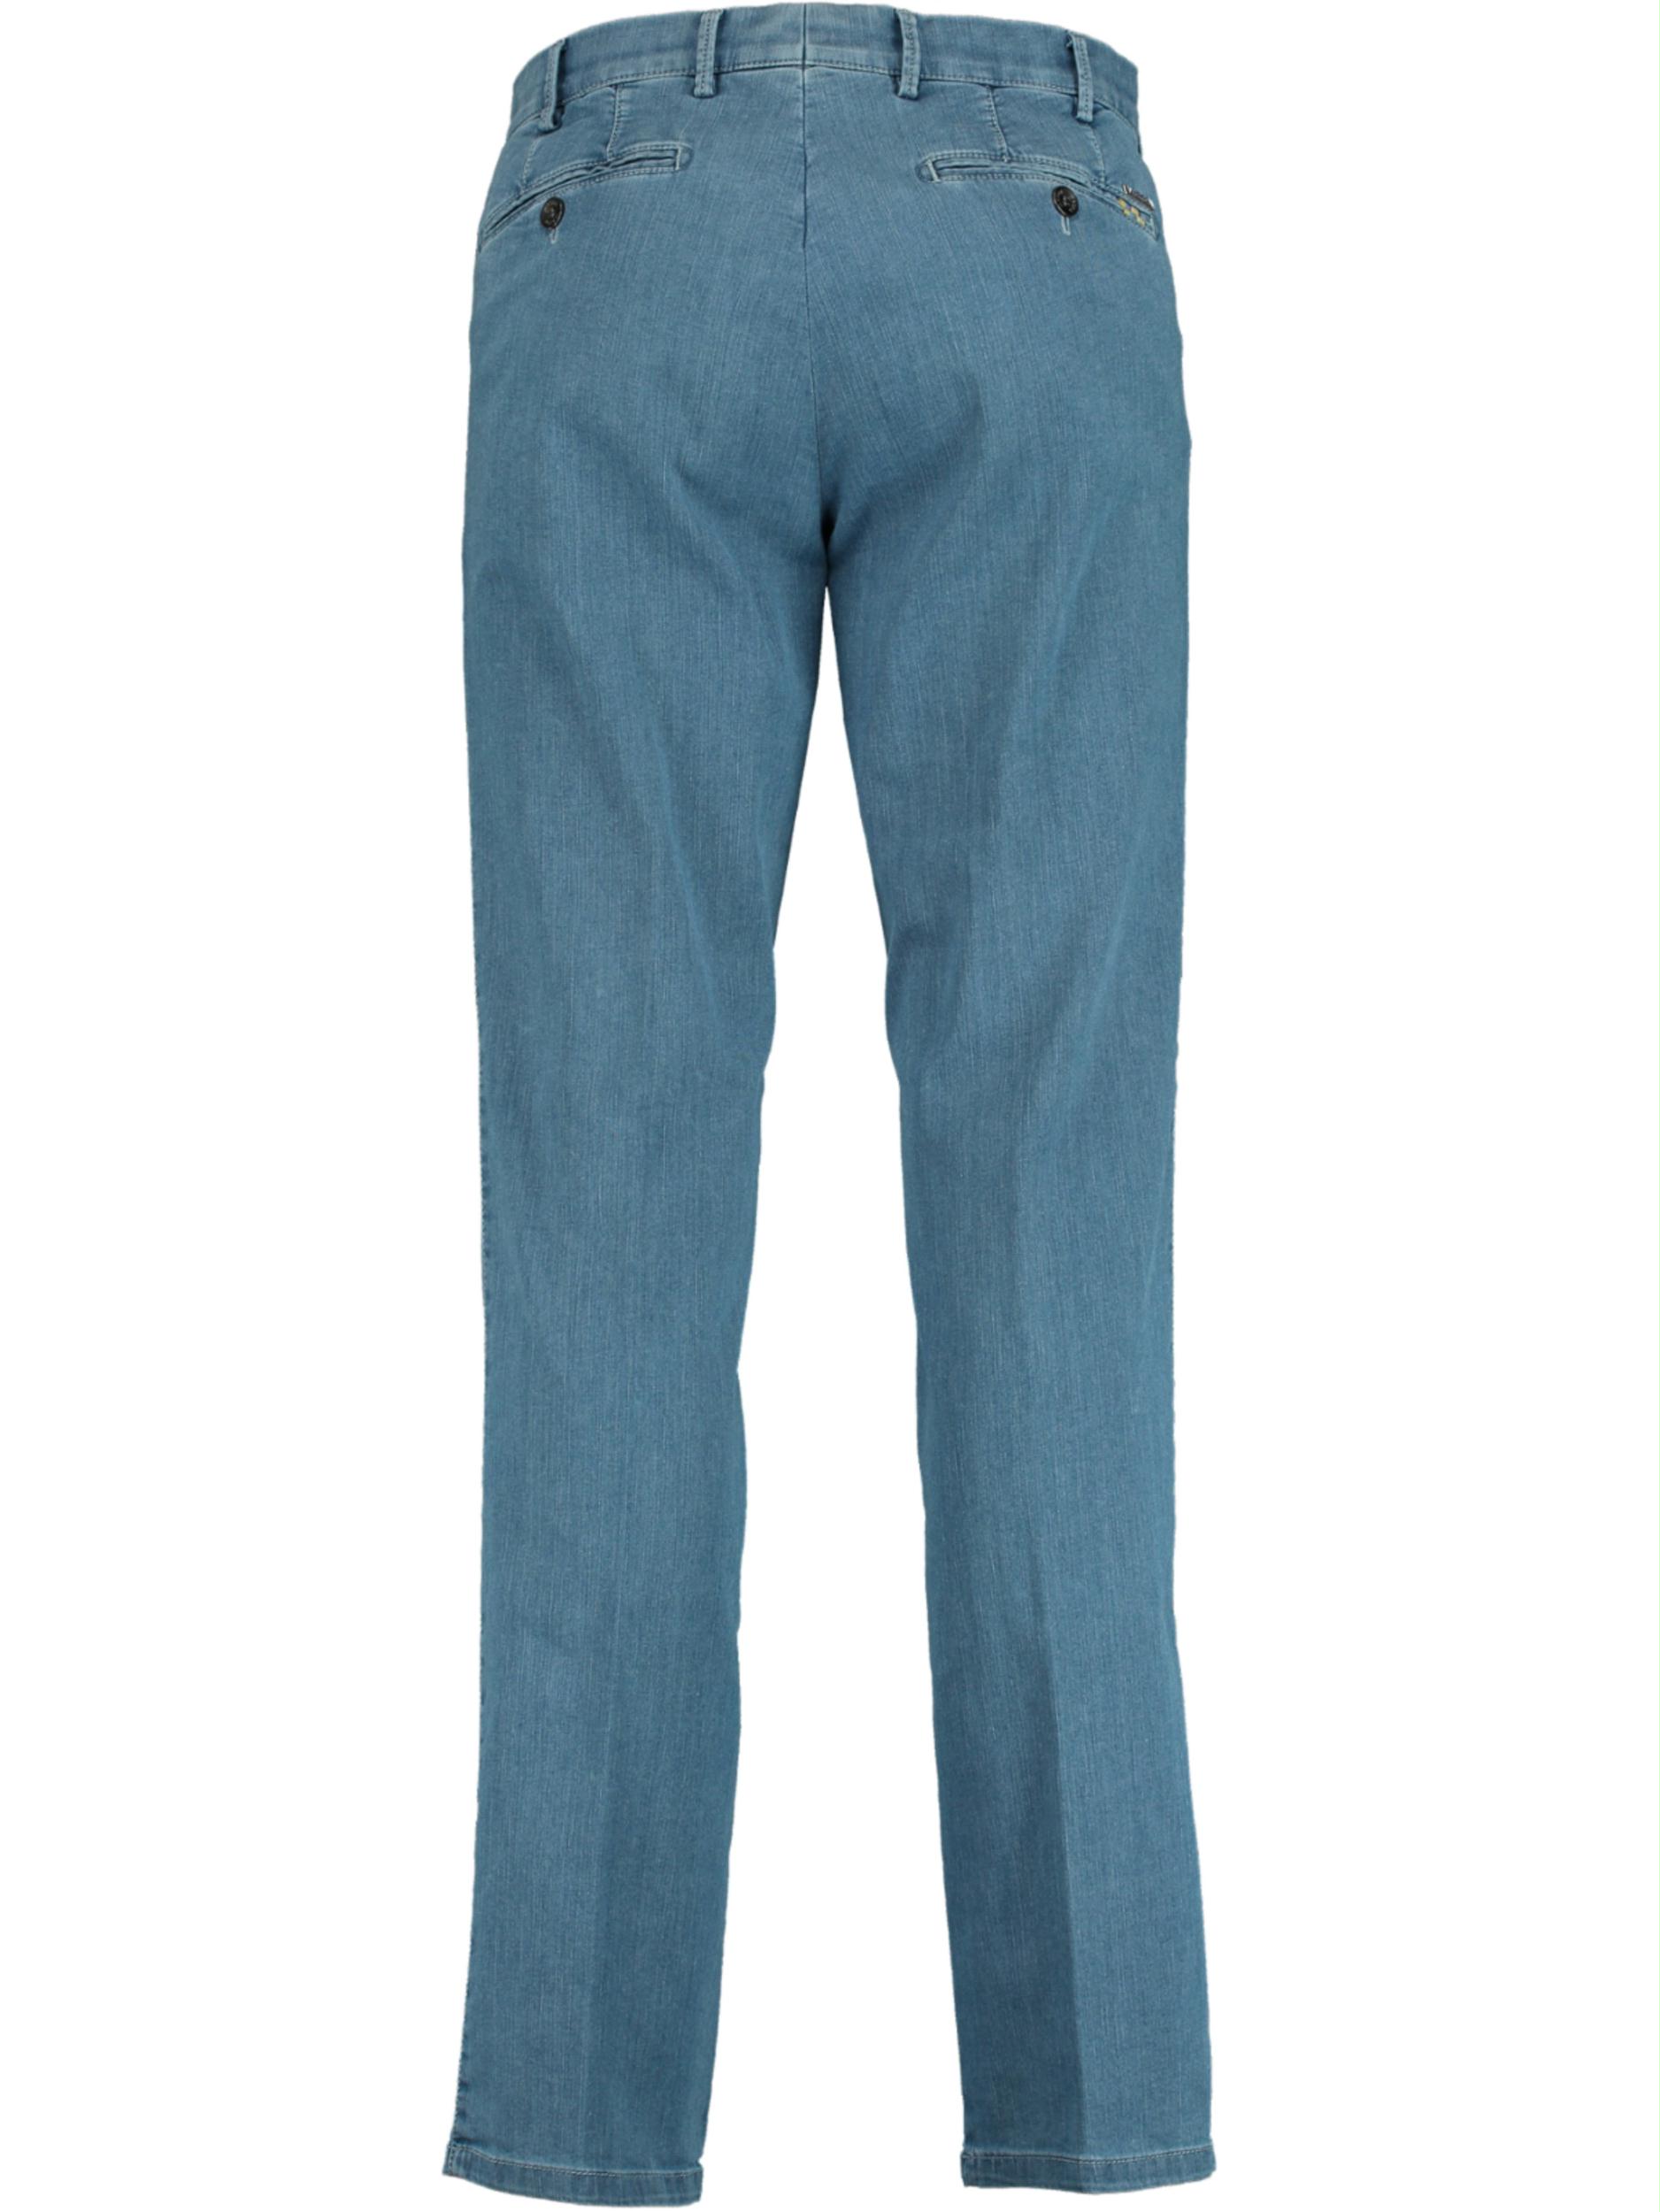 Meyer Flatfront Jeans Blauw DUBAI Art.1-4120 3101412000/15